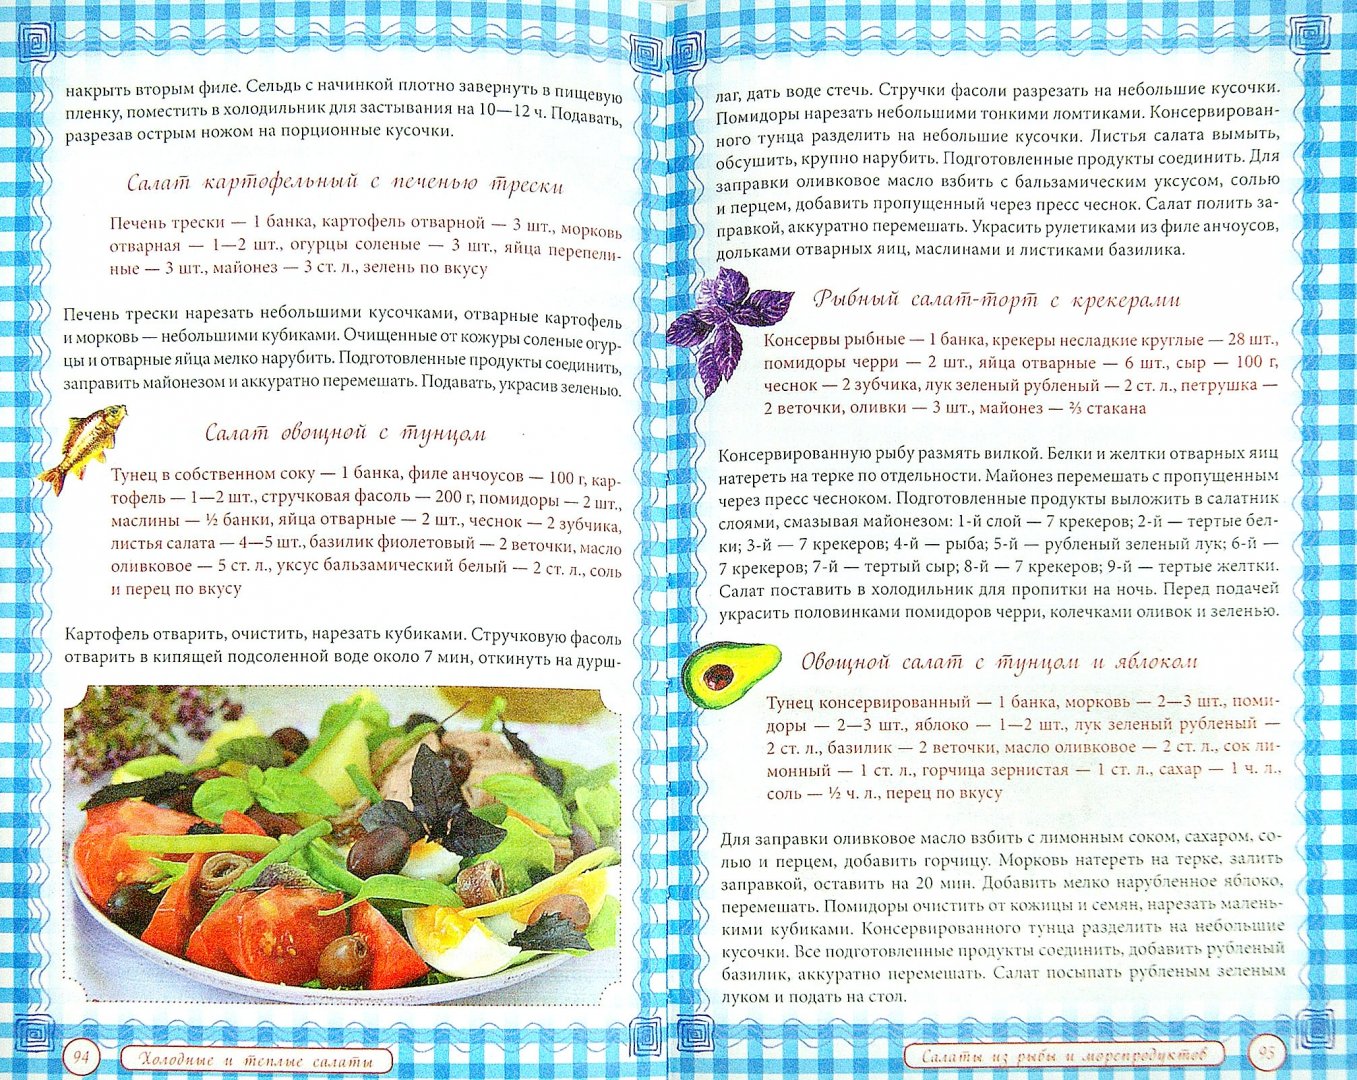 Иллюстрация 1 из 19 для Холодные и теплые салаты. Мясные, рыбные, овощные, корейские, постные + 50 салатных заправок | Лабиринт - книги. Источник: Лабиринт